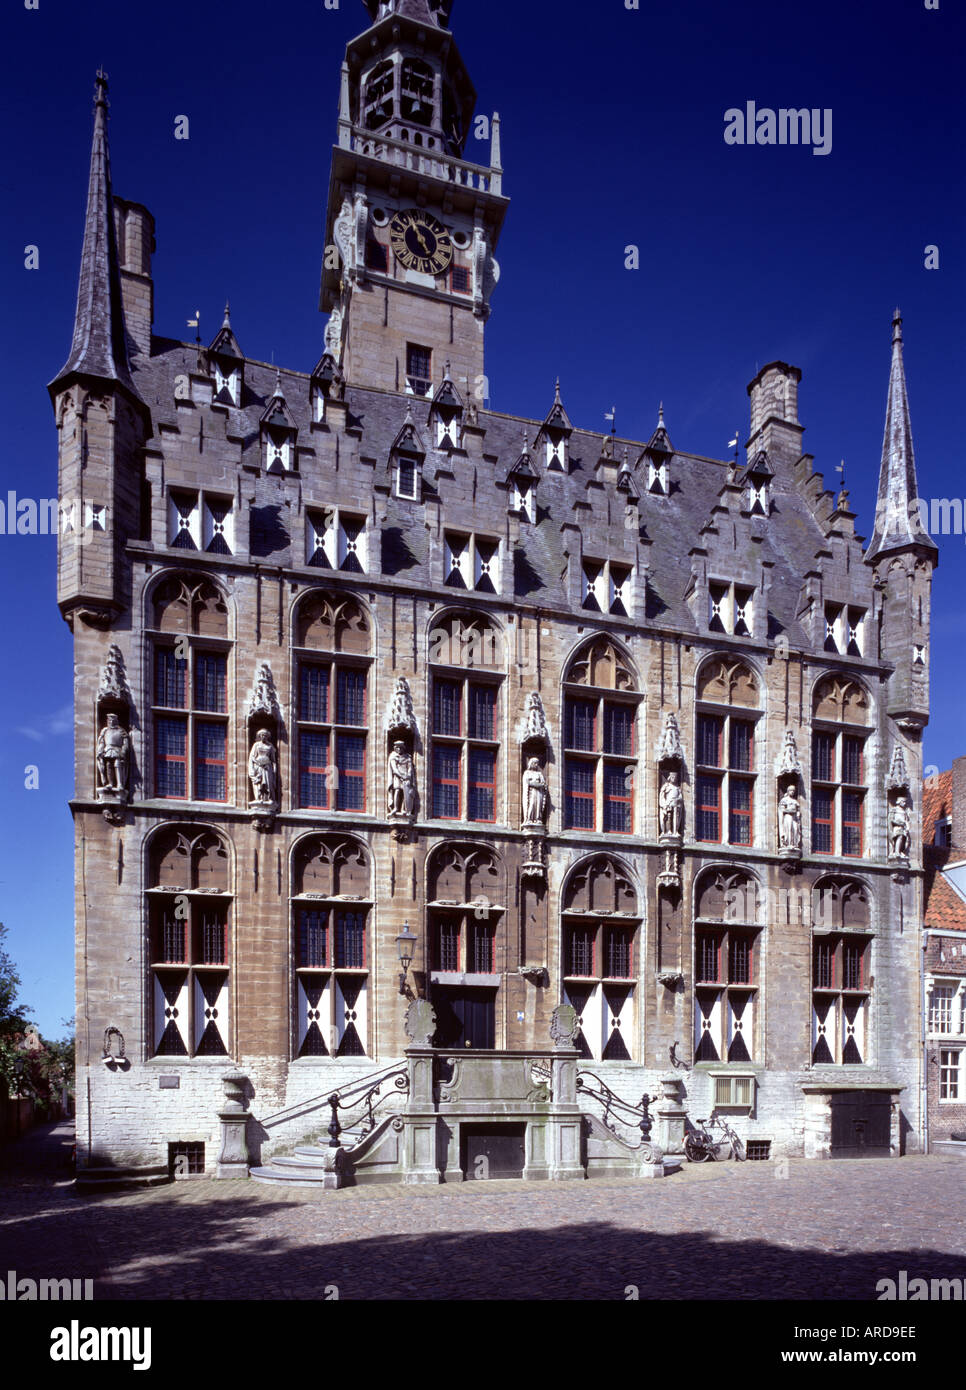 Veere, Stadhuis, Fassade Stock Photo